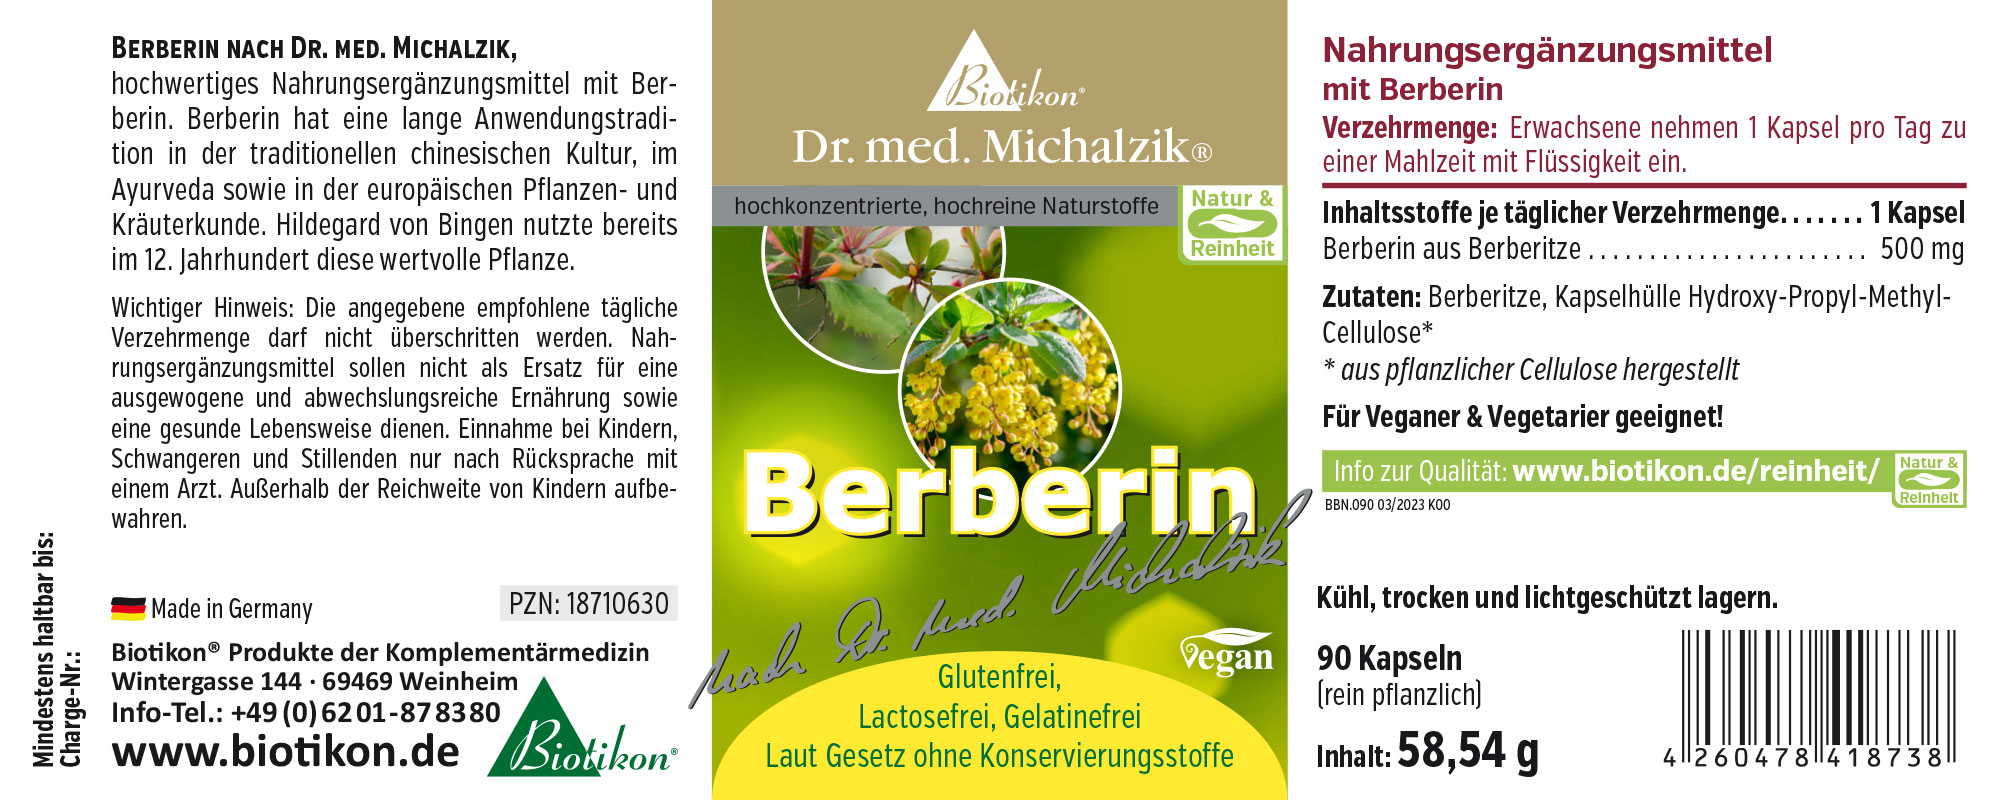 Berberin nach Dr. med. Michalzik